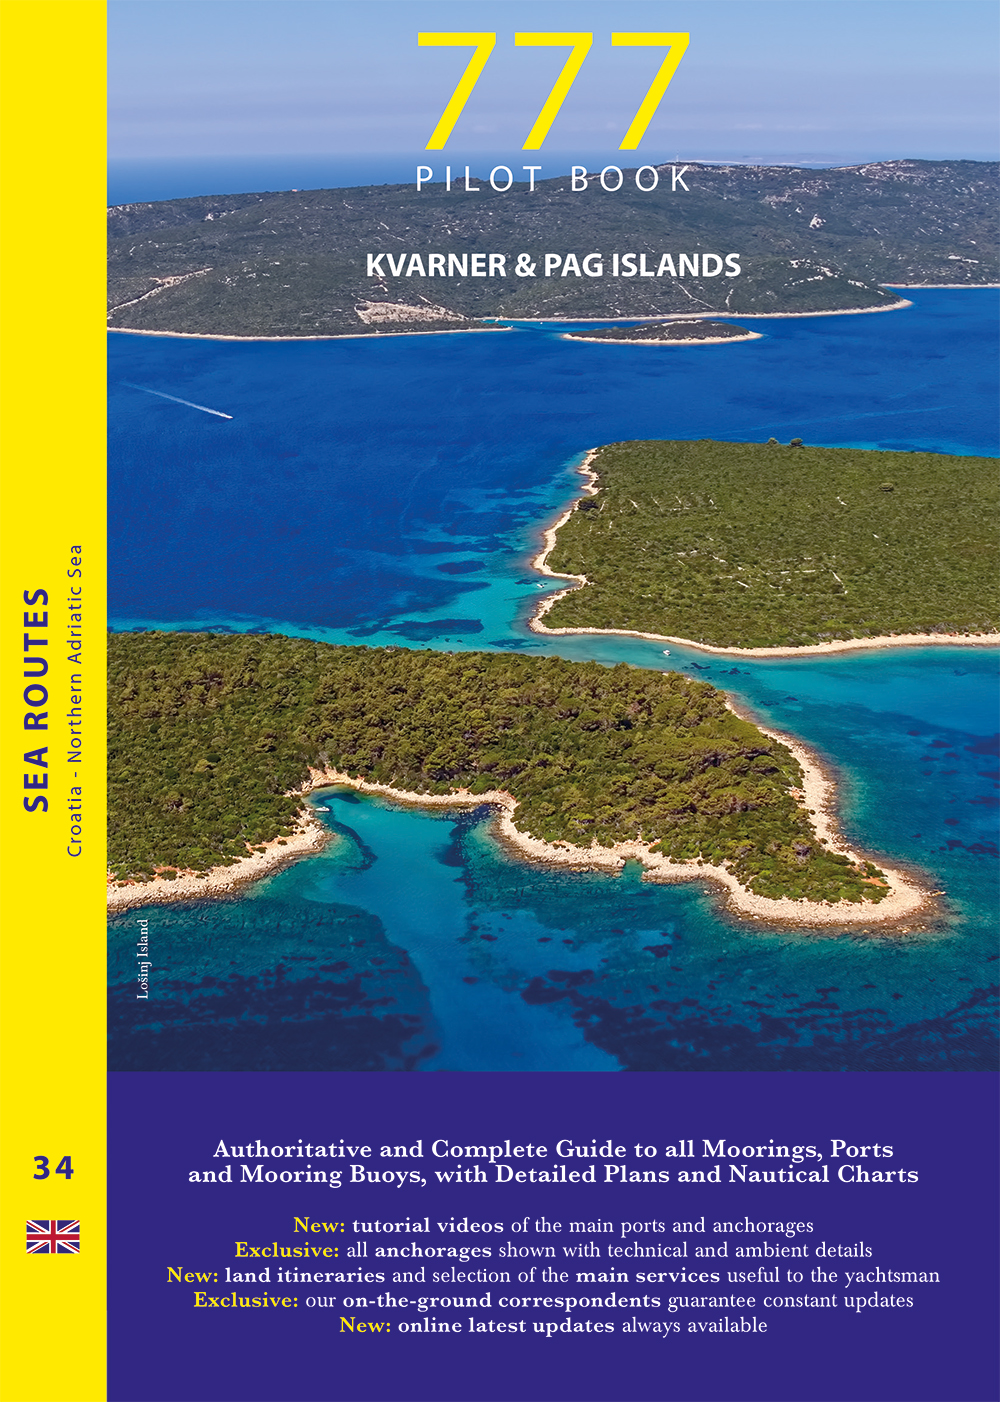 Kvarner & Pag Islands